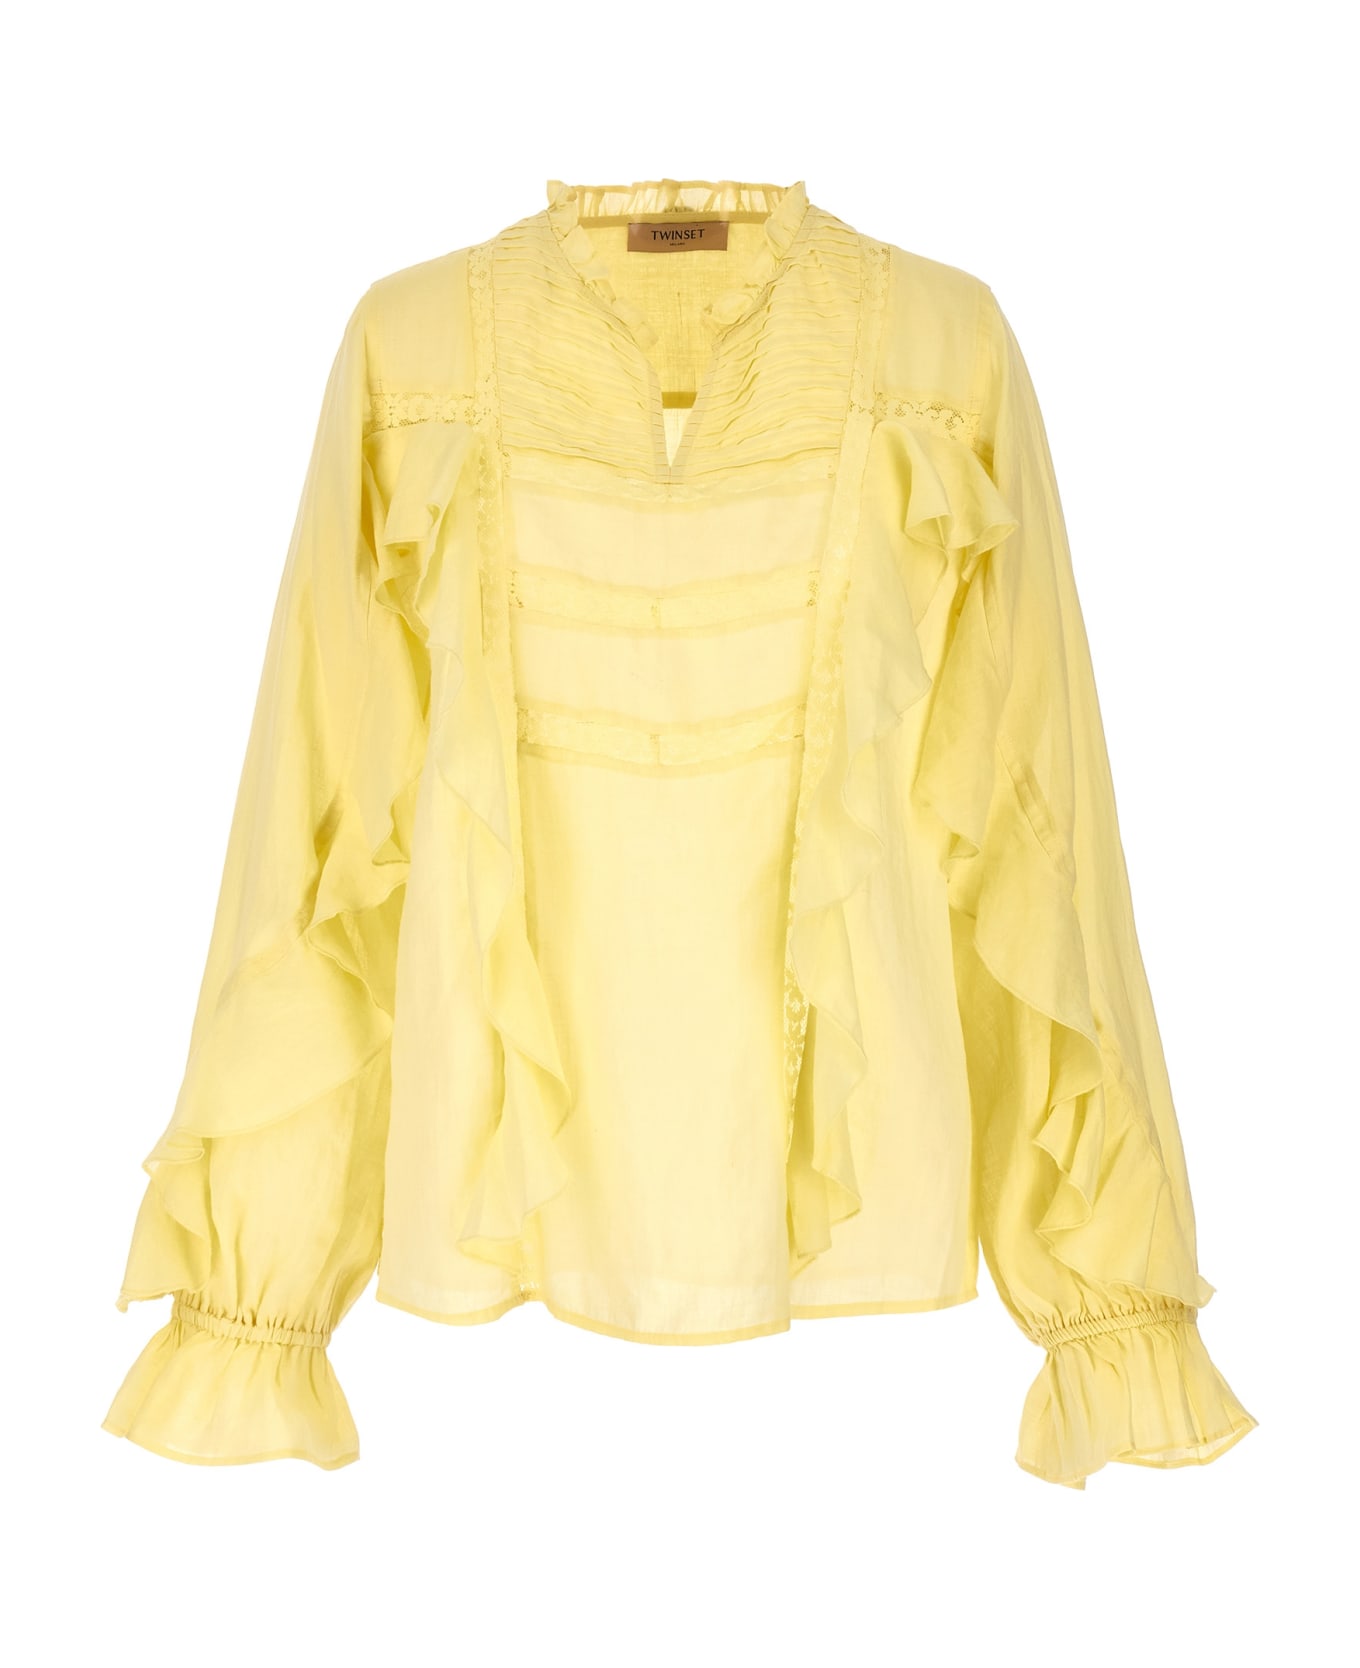 TwinSet Embroidery Ruffle Blouse - Yellow